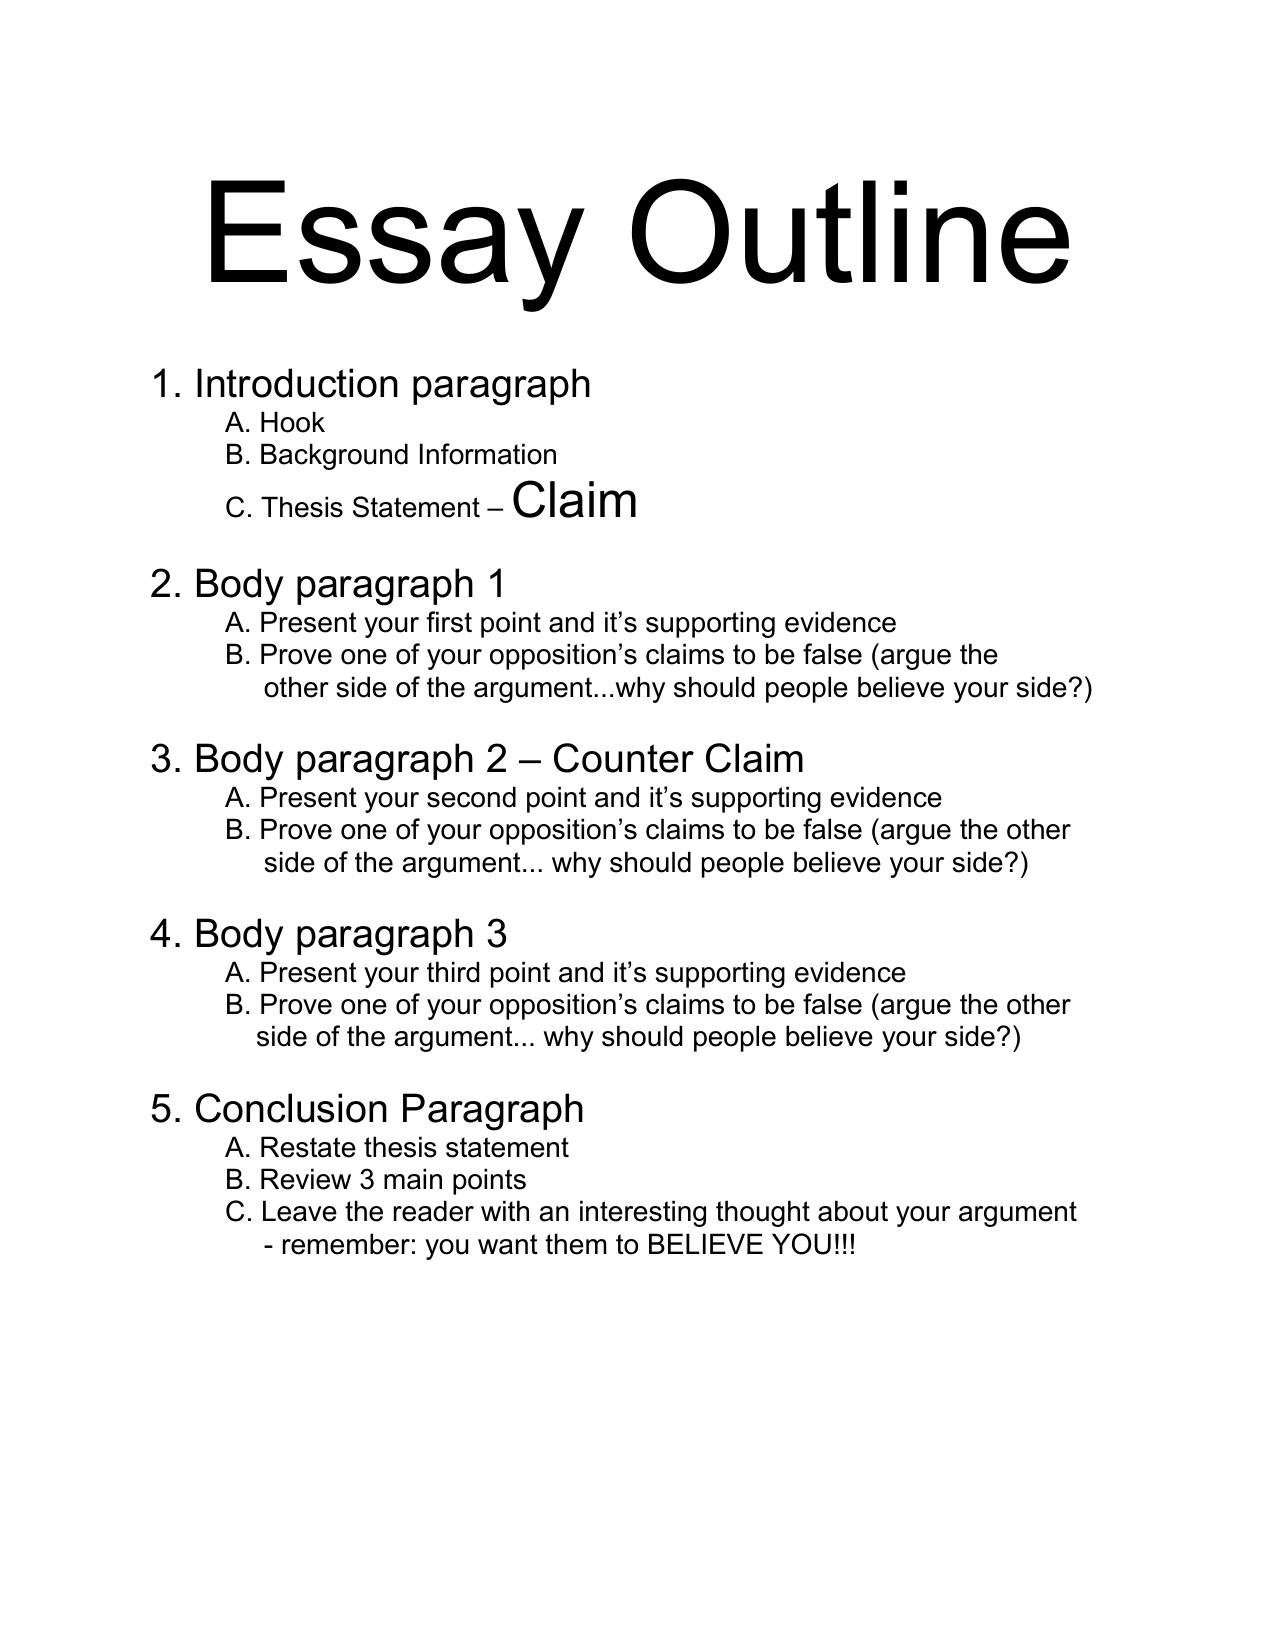 how to outline argumentative essay